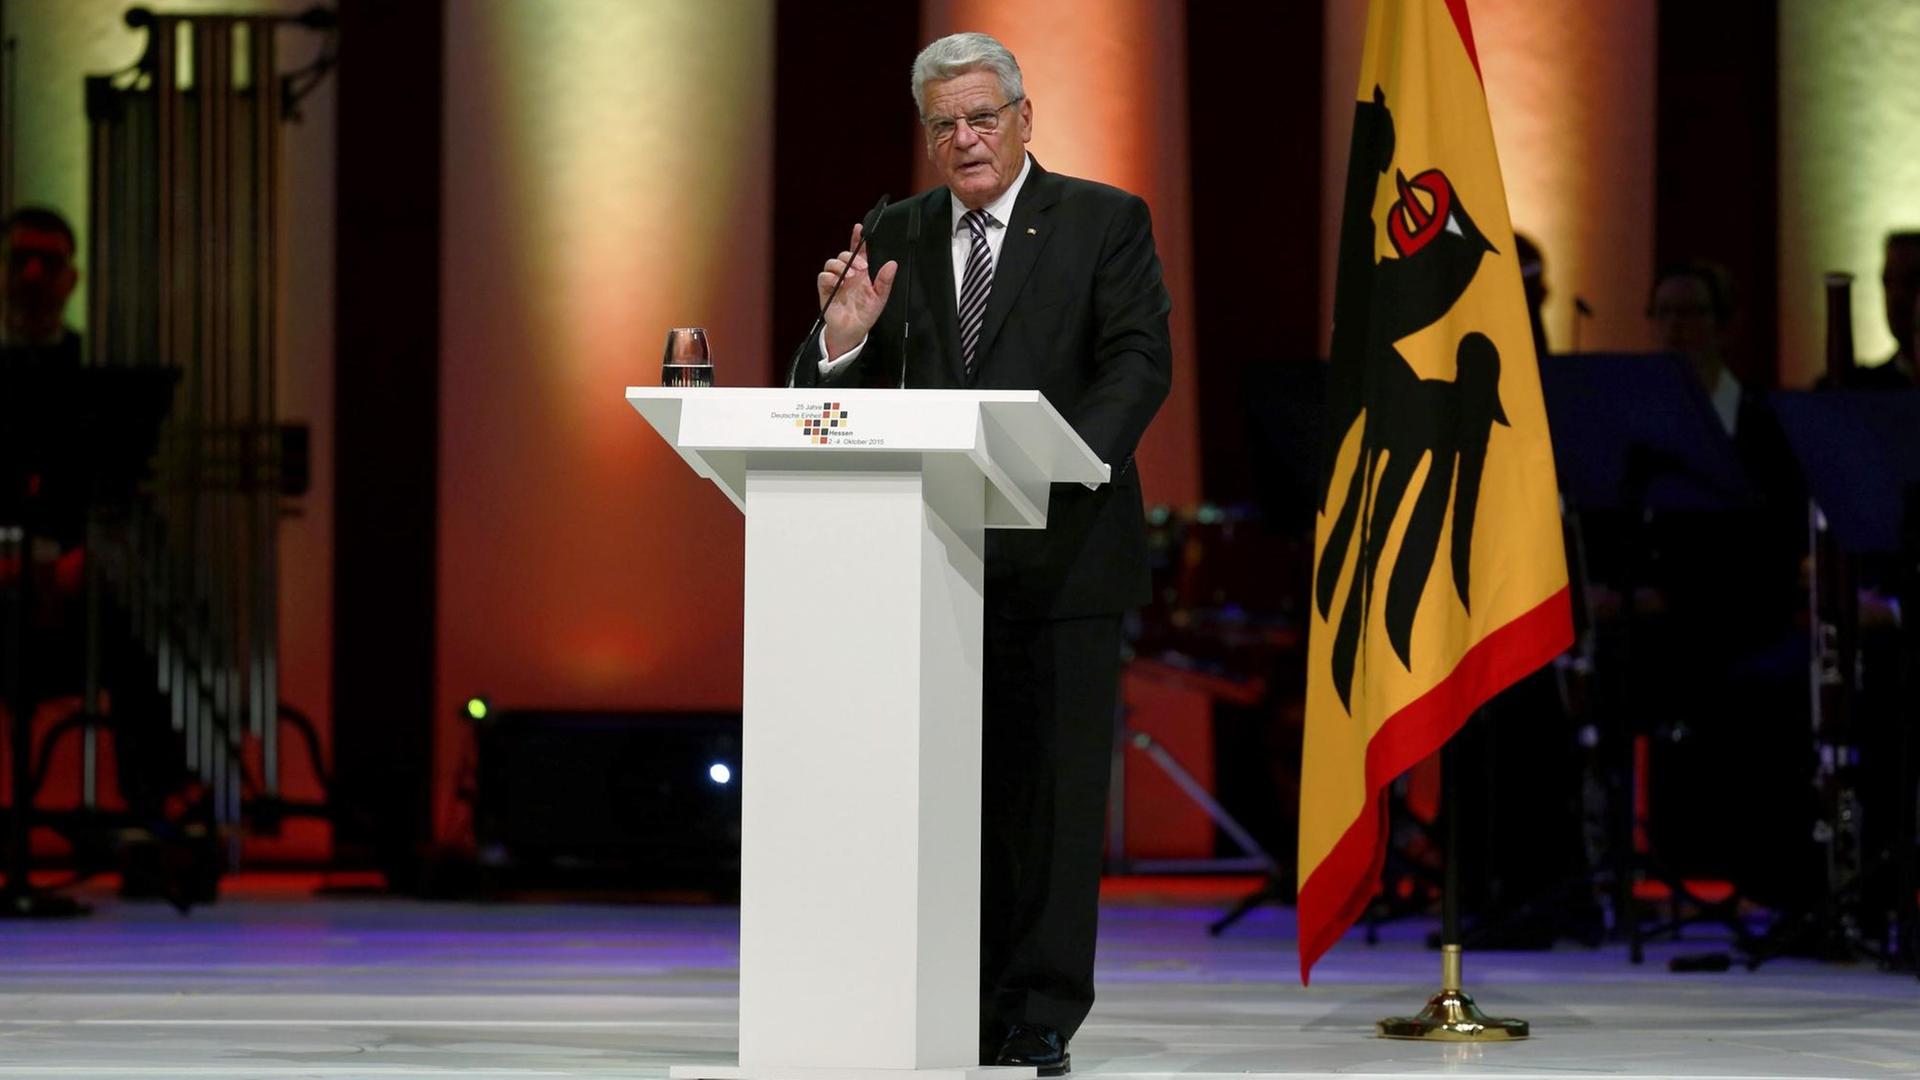 Bundespräsident Joachim Gauck steht hinter einem Sprecherpult und hält eine Rede. Im Hintergrund ist die Standarte des Bundespräsidenten zu sehen.